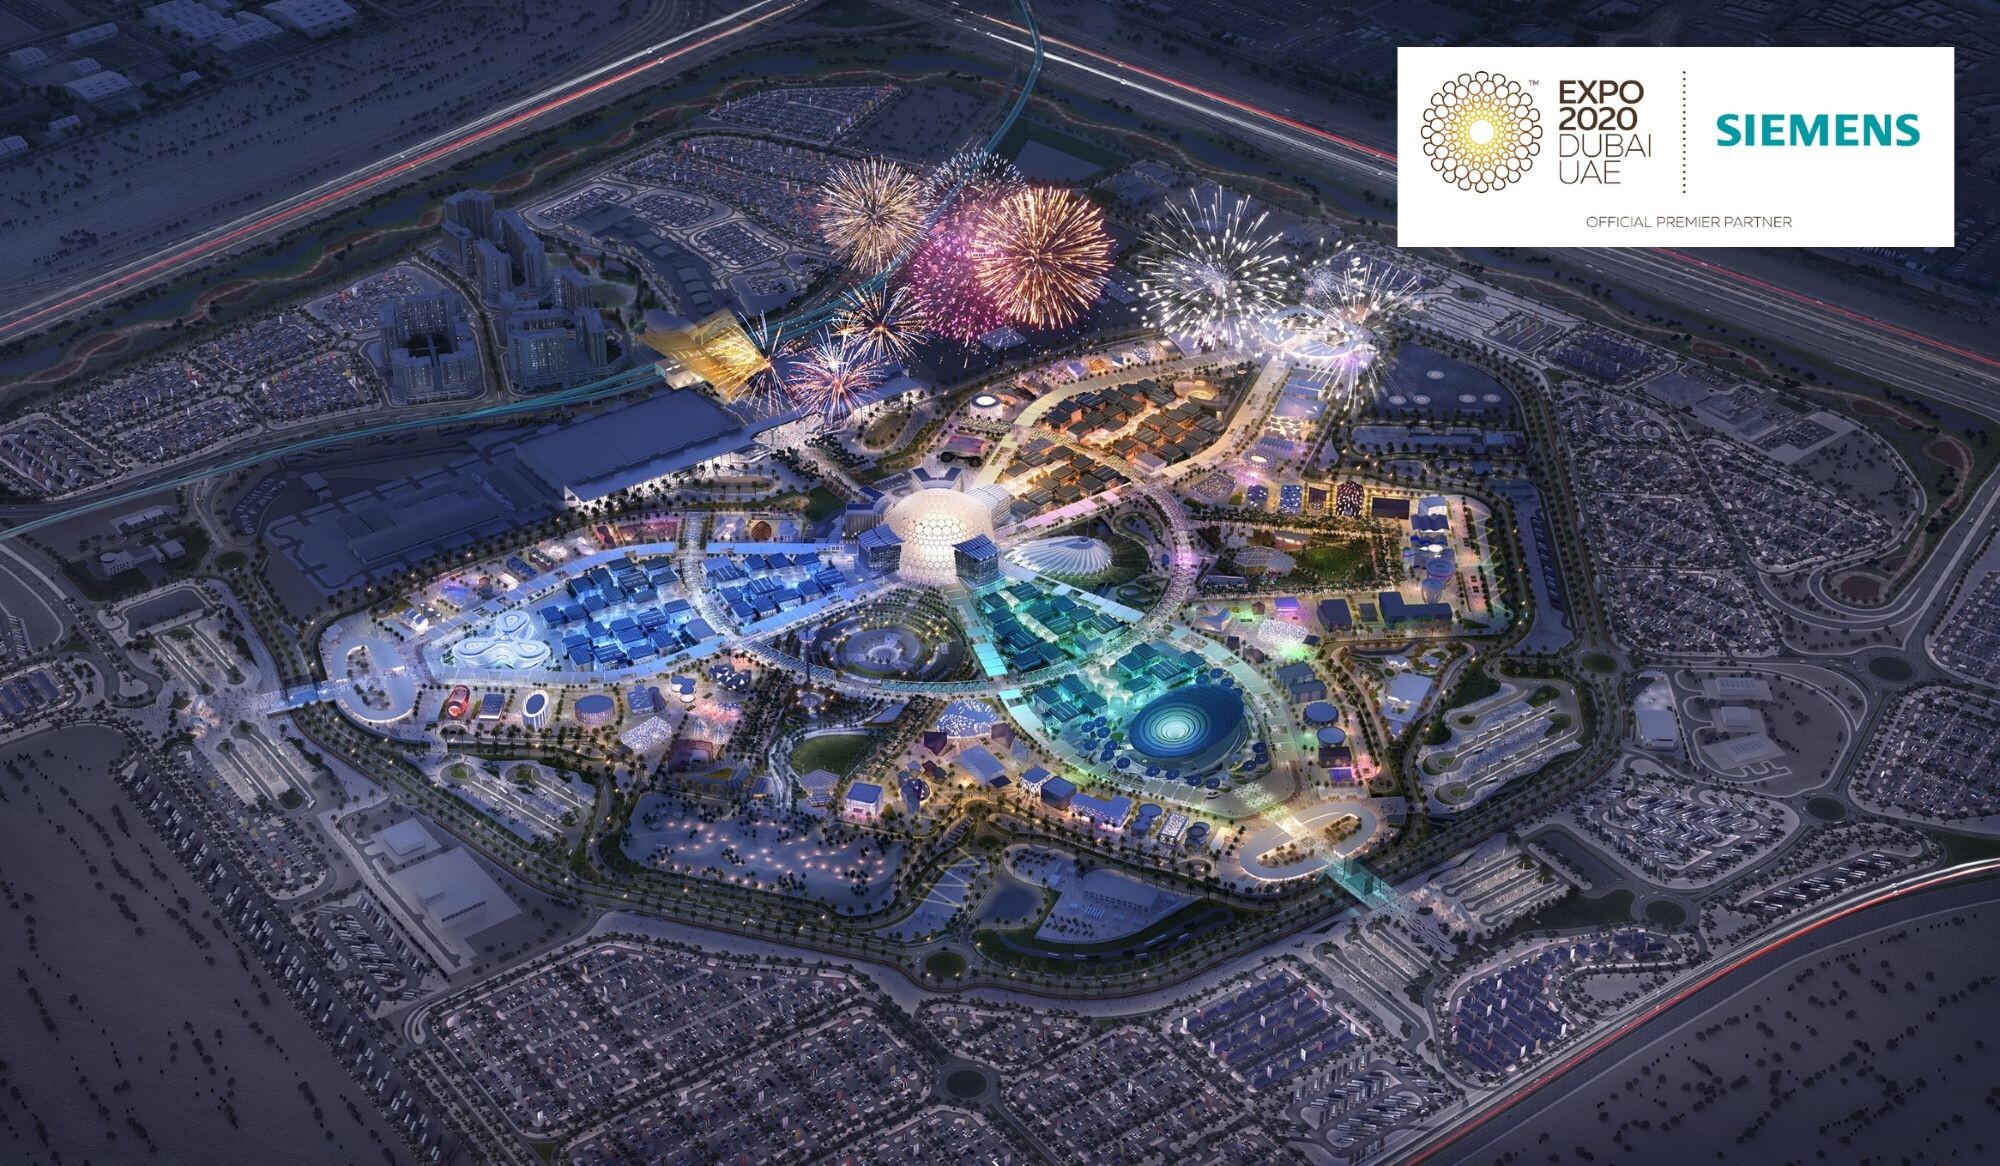 ซีเมนส์ขับเคลื่อน Smart City แห่งอนาคต ด้วยเทคโนโลยีสุดล้ำใน "เอ็กซ์โป 2020 ดูไบ*"